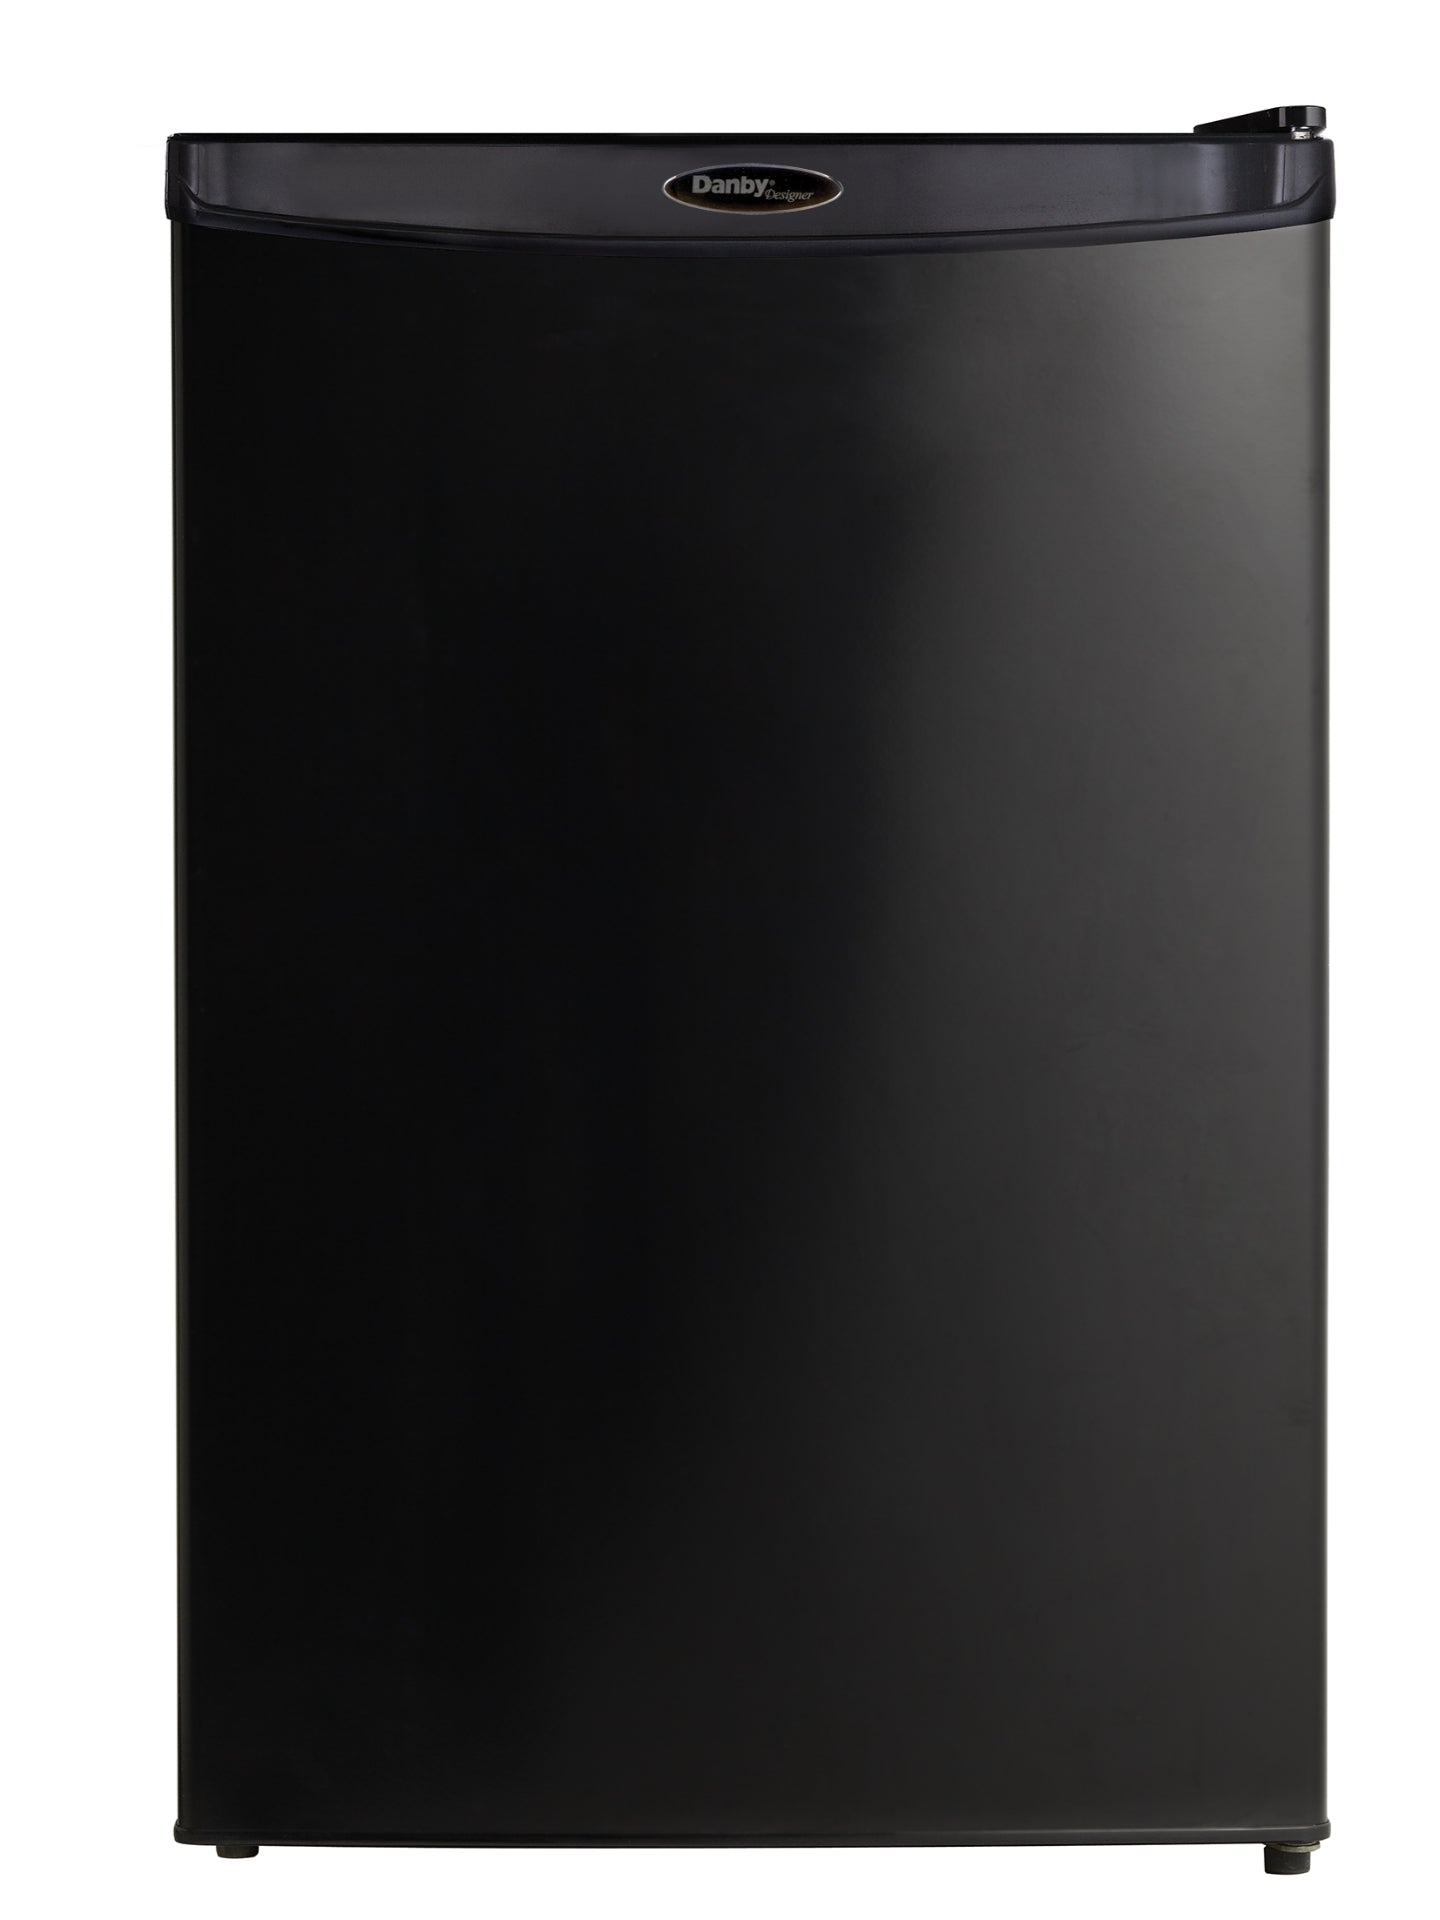 Danby Designer 4.4 cu. ft. Compact Fridge in Black - DAR044A4BDD-6